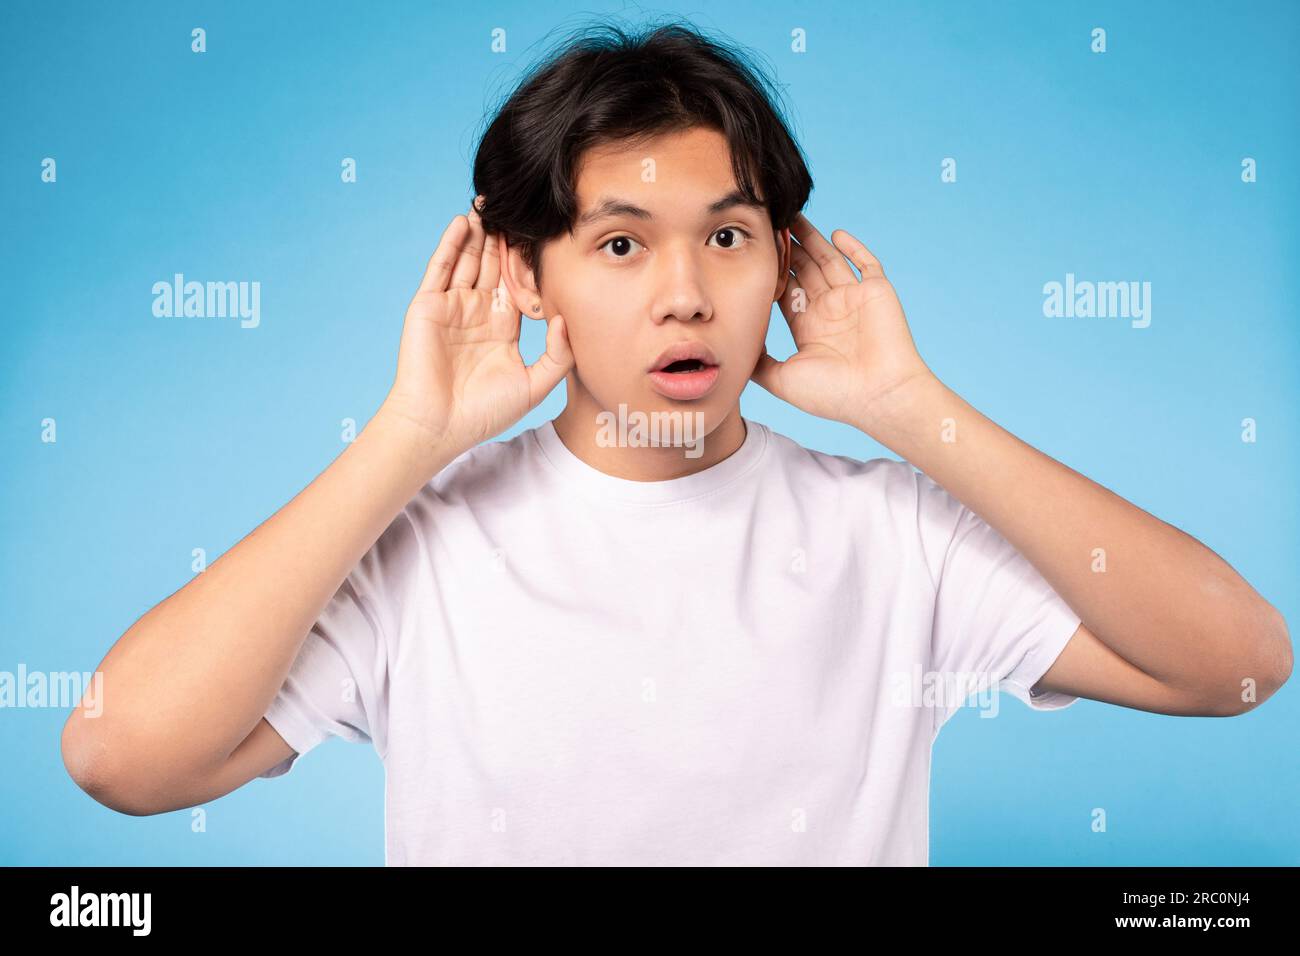 Asiatischer Teenager, Der Zuhört, Hände An Ohren Hält, Blauer Hintergrund Stockfoto